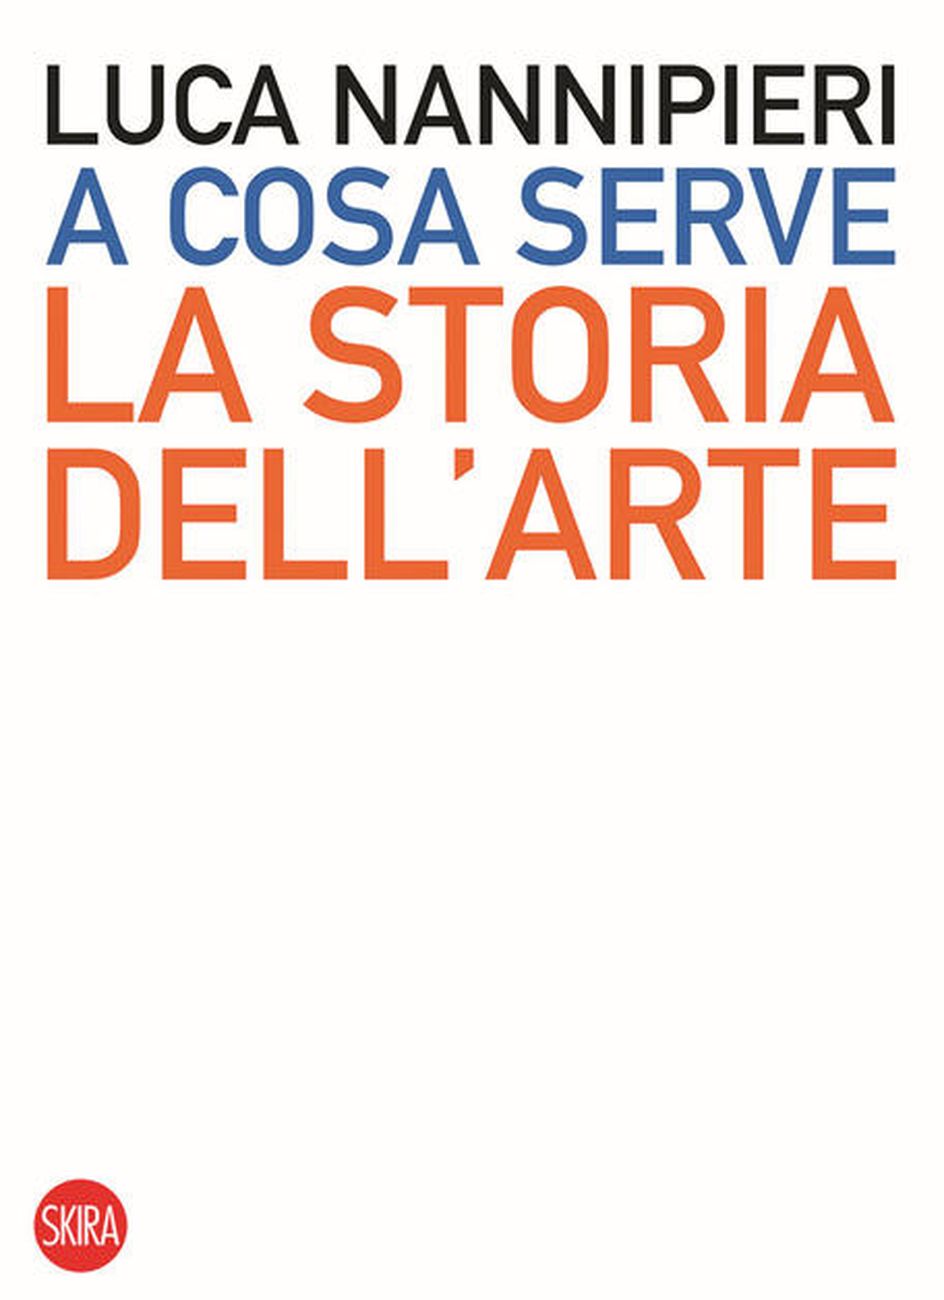 Luca Nannipieri – A cosa serve la storia dell'arte (Skira, Milano 2020)